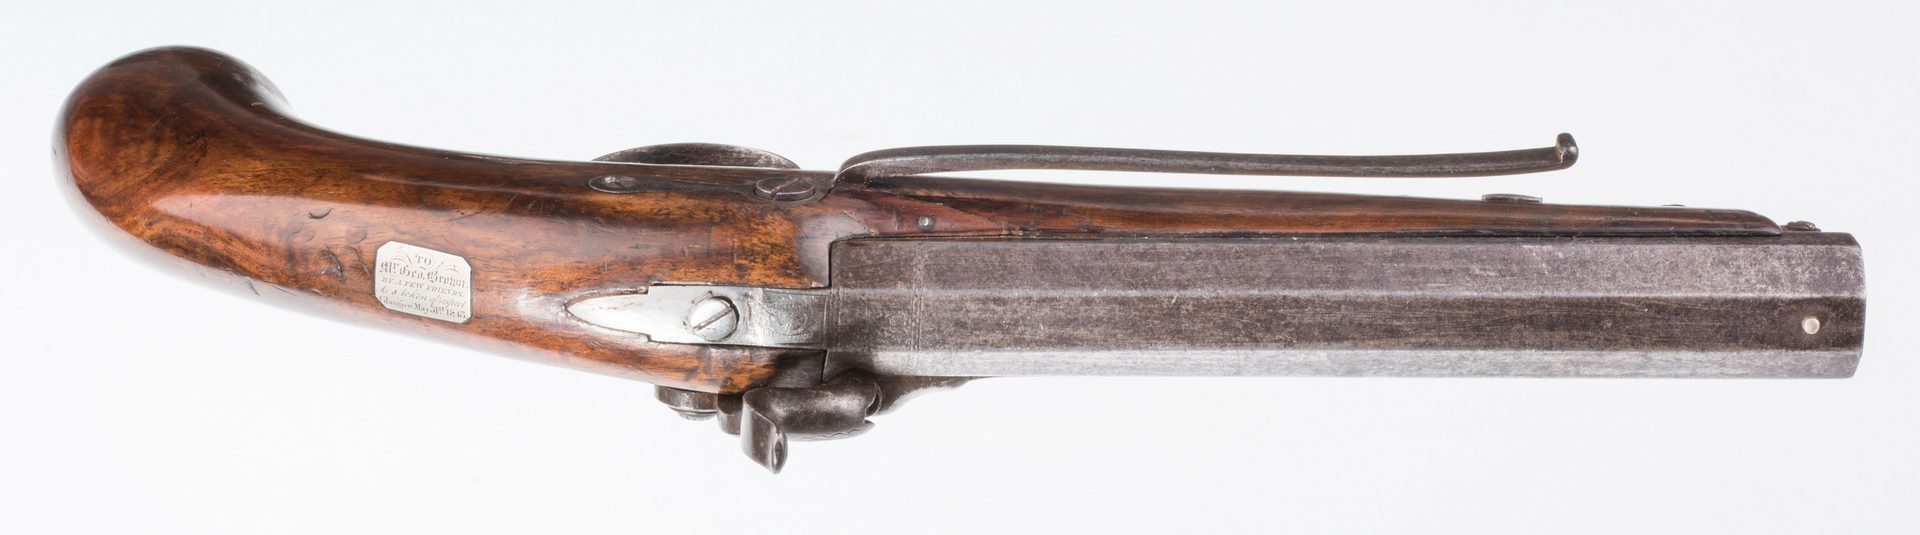 Lot 789: Pr 19th c. English/Scottish Belt Pistols